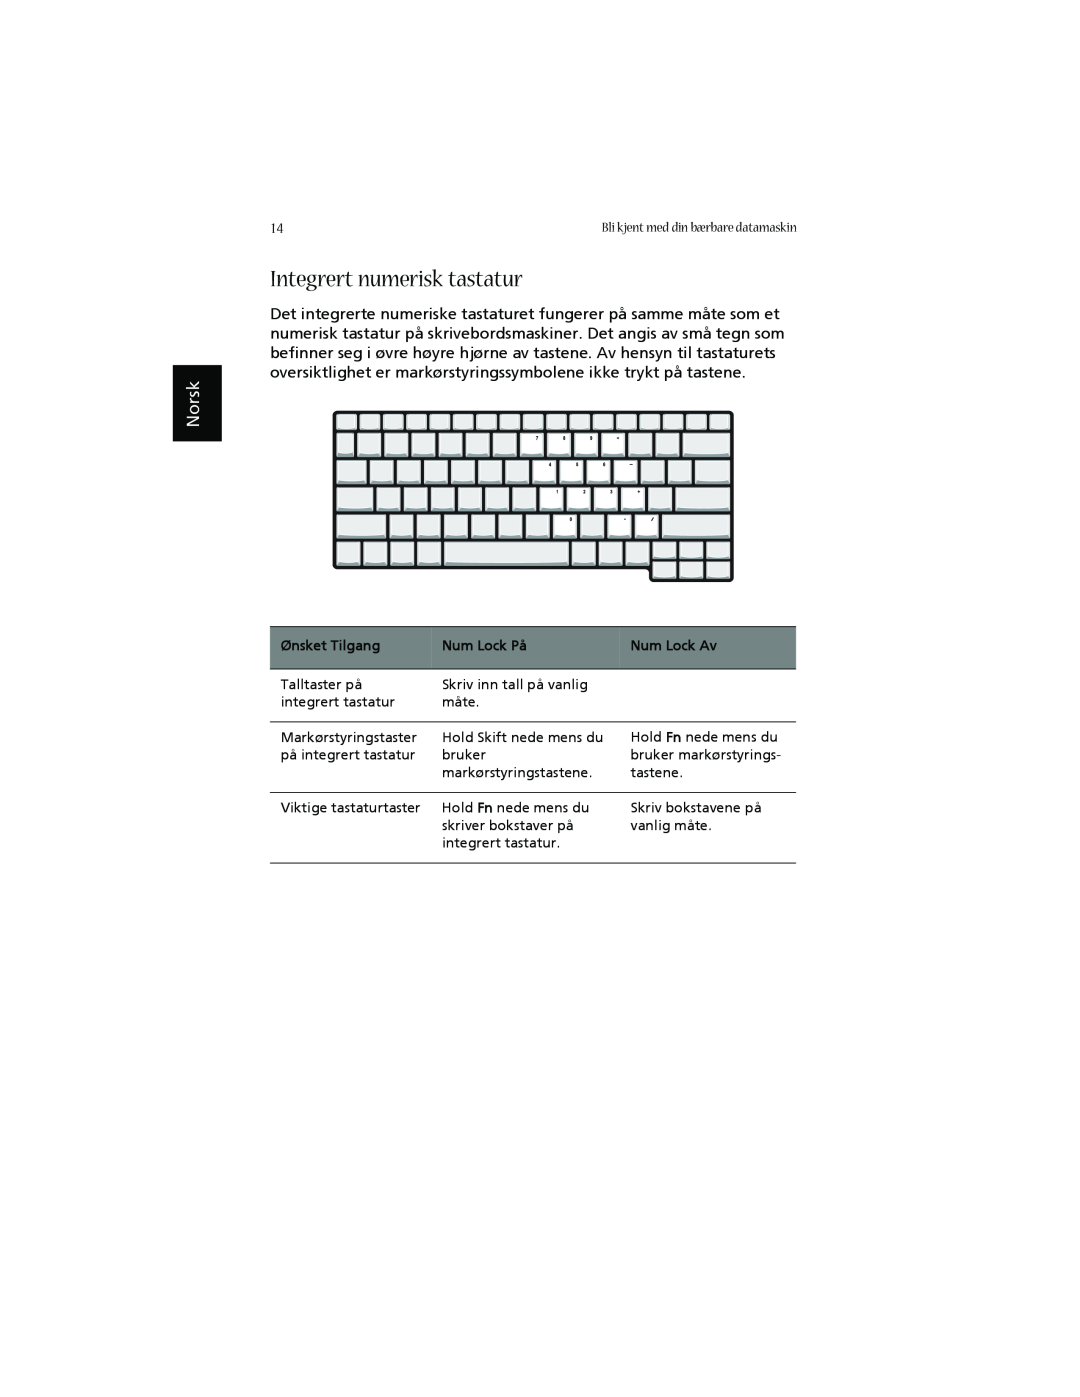 Acer 1660 manual Integrert numerisk tastatur, Norsk, Ønsket Tilgang, Num Lock På, Num Lock Av 